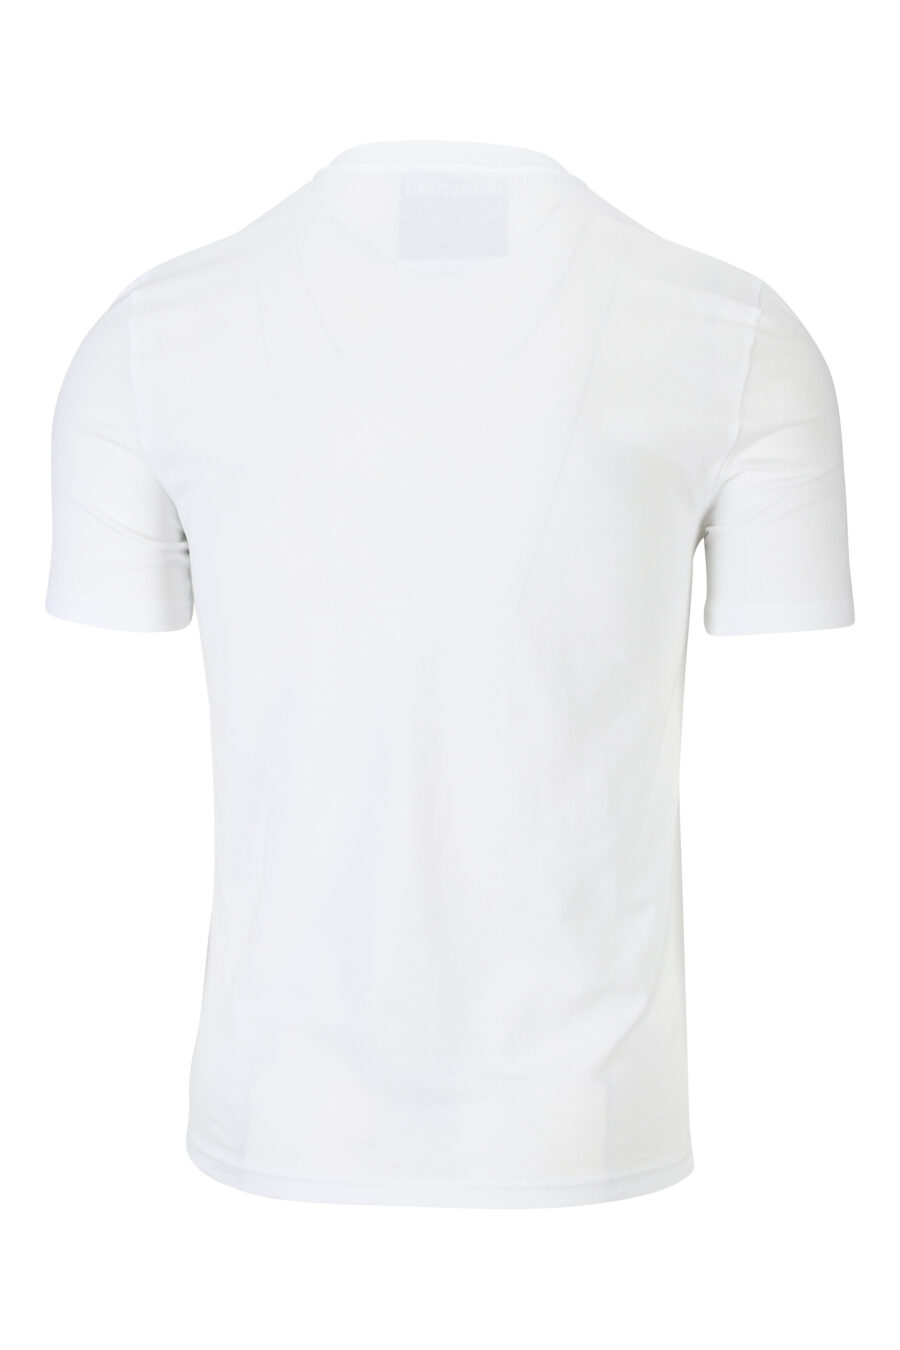 T-shirt blanc avec minilogue noir usé - 889316938791 1